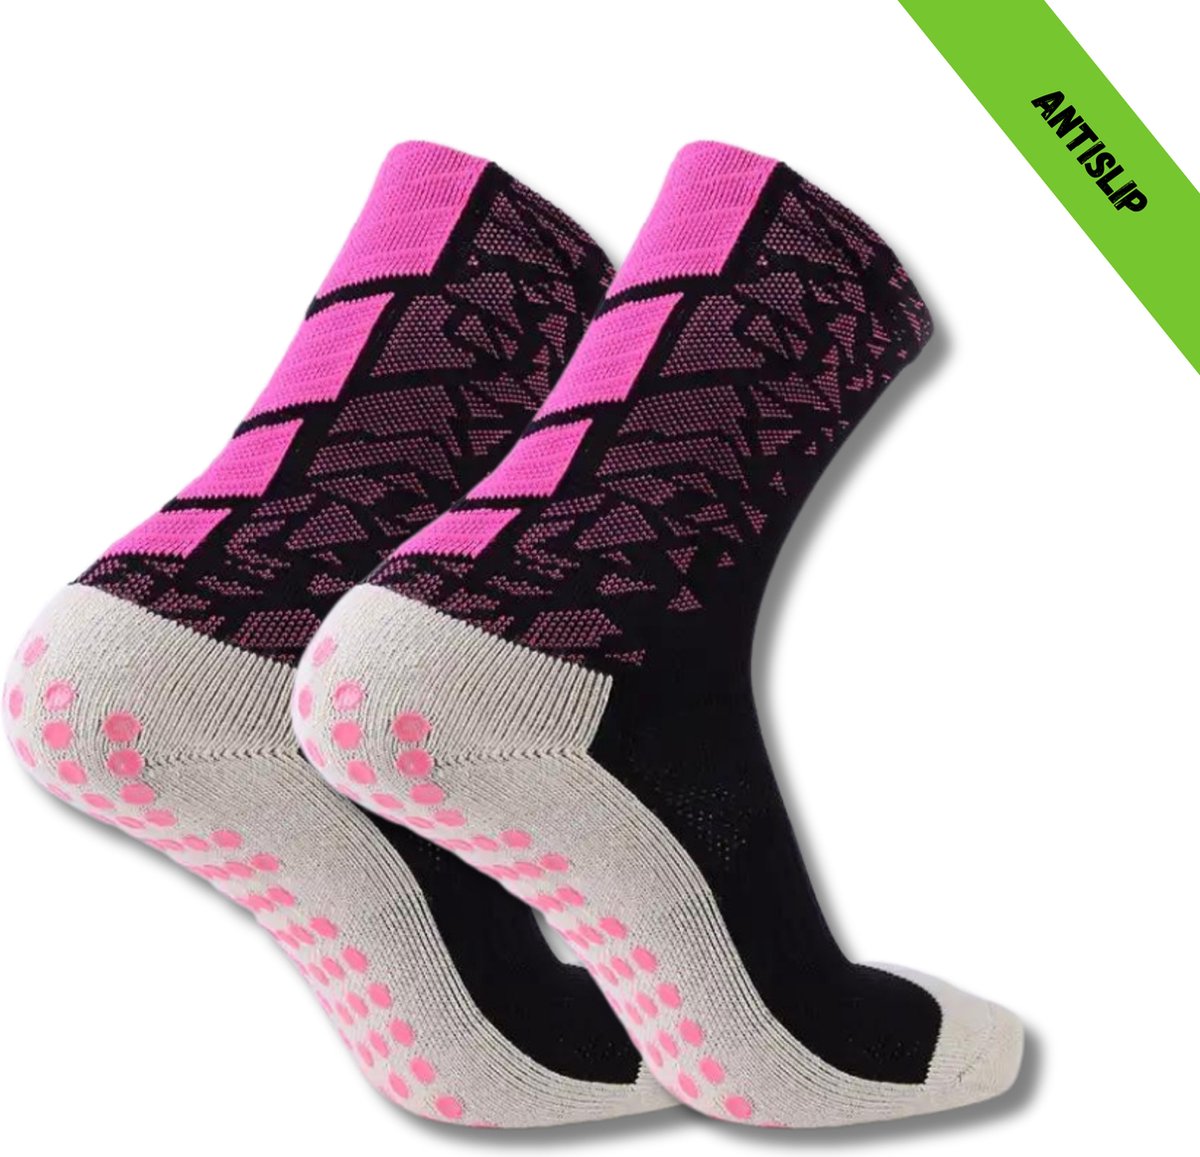 Gripsokken - Sportsokken - Gripsokken Voetbal - Gripsokken Voetbal Zwart/Roze- Grip Socks - Pilates Sokken - Yoga Sokken - Anti Blaren - One Size - Compressie